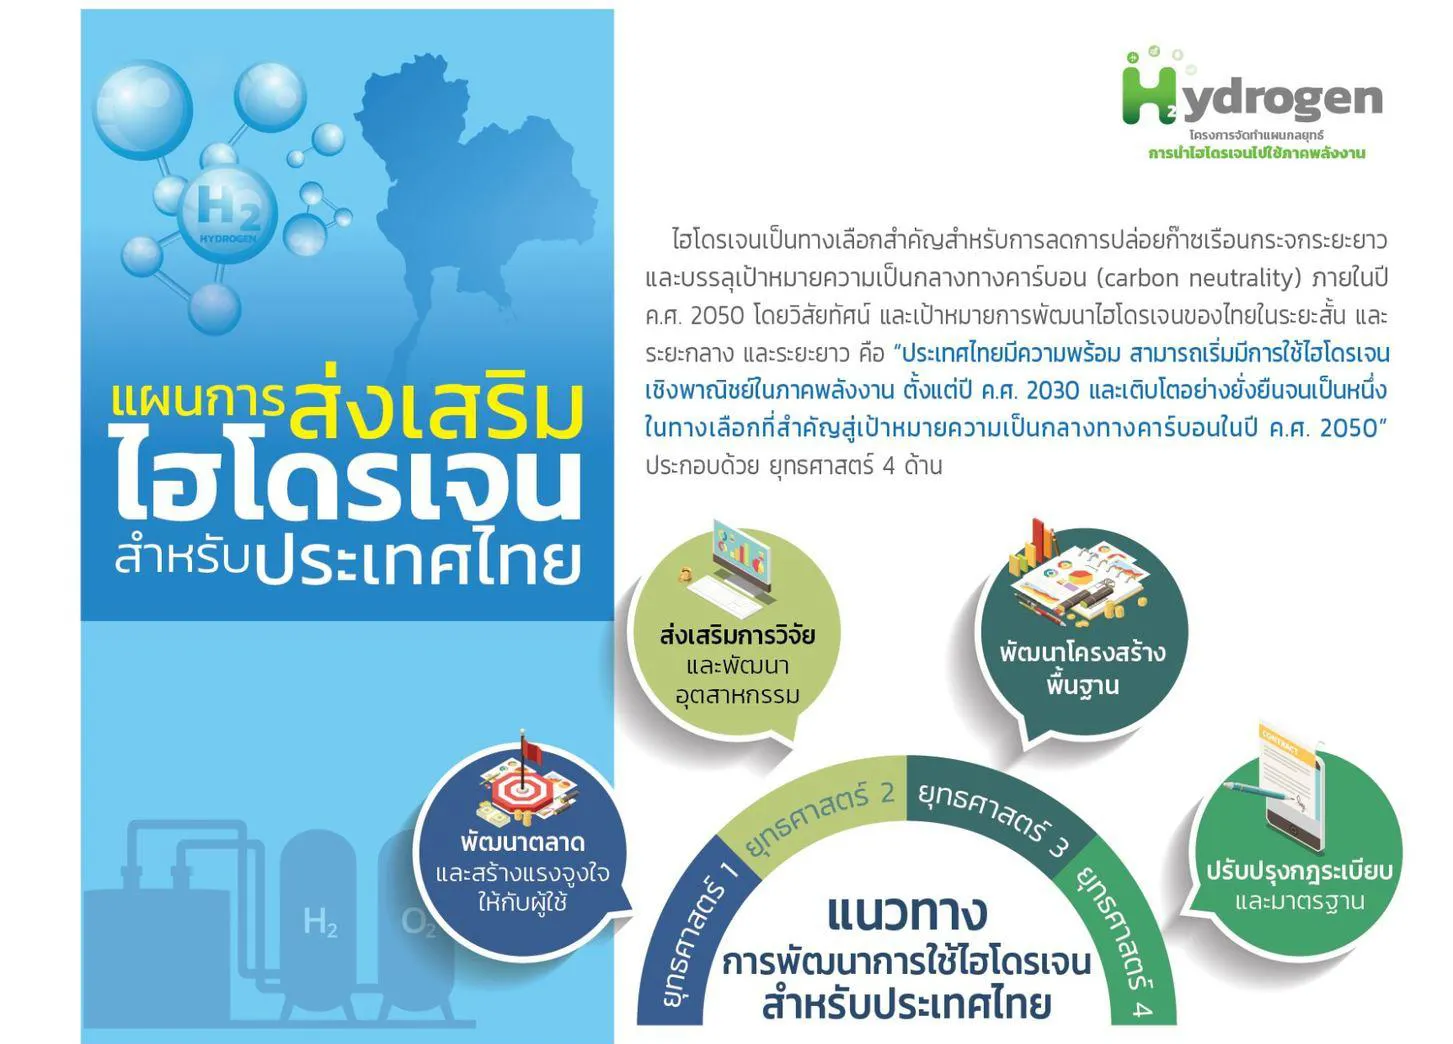 แผนการส่งเสริมไฮโดรเจนสำหรับประเทศไทย